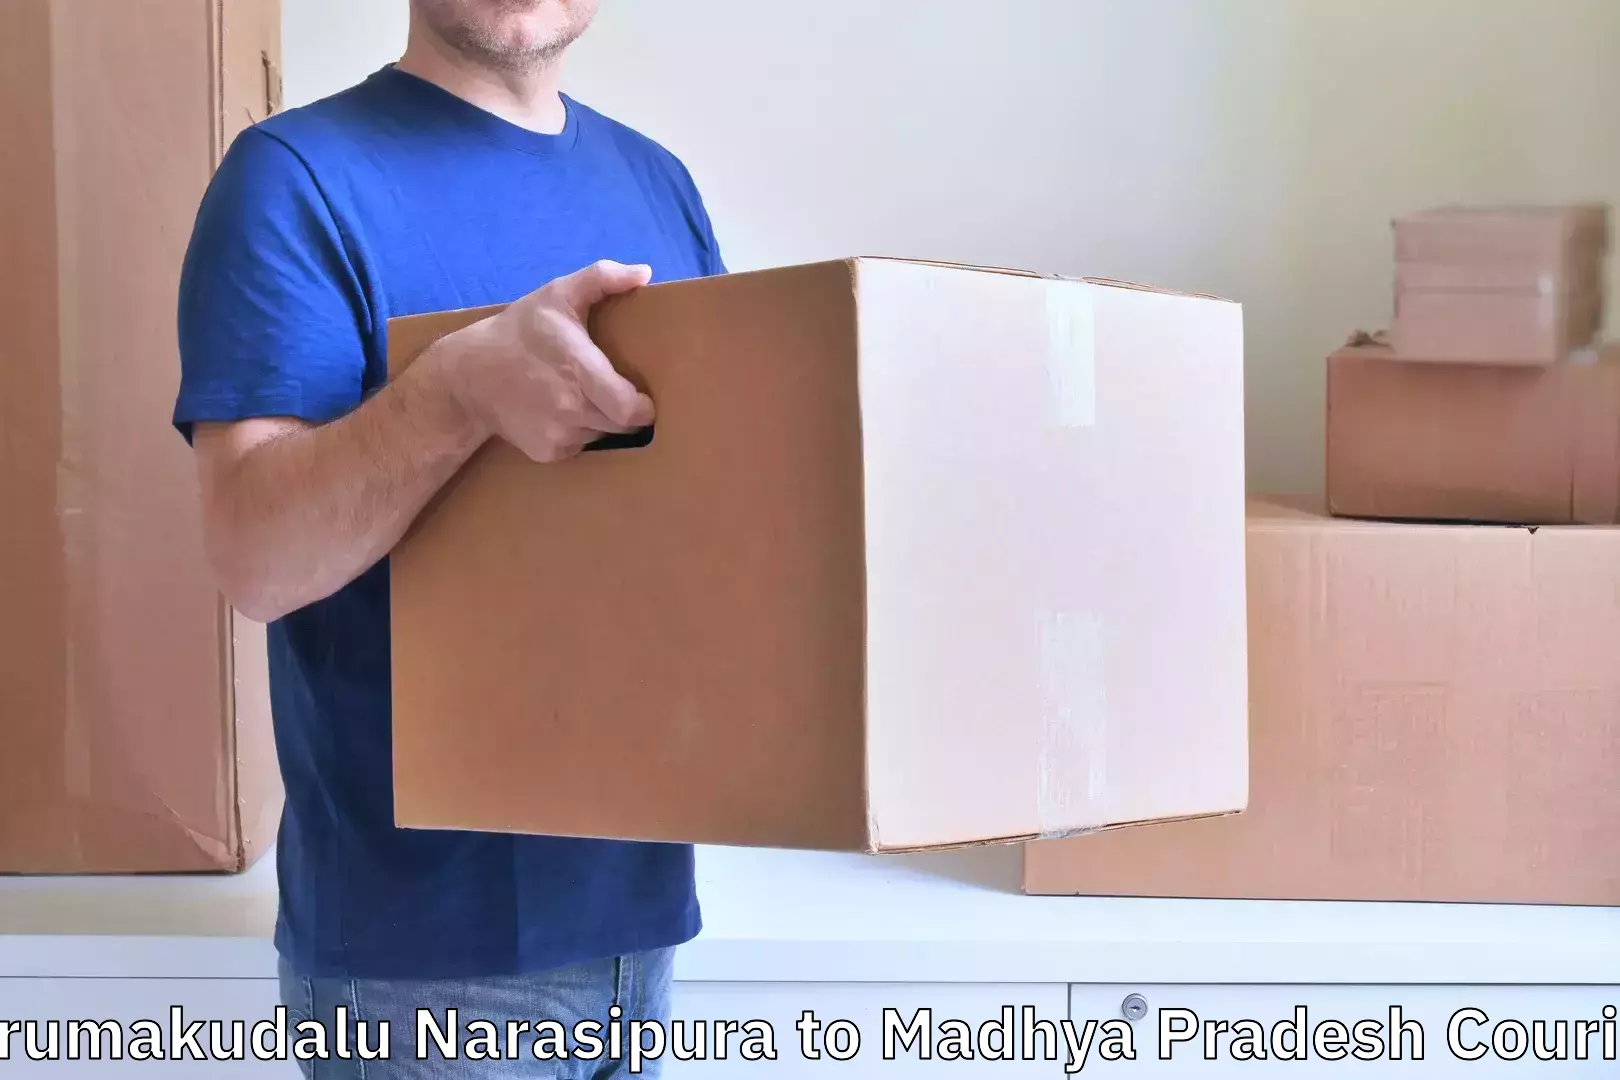 Baggage shipping service Tirumakudalu Narasipura to Katni